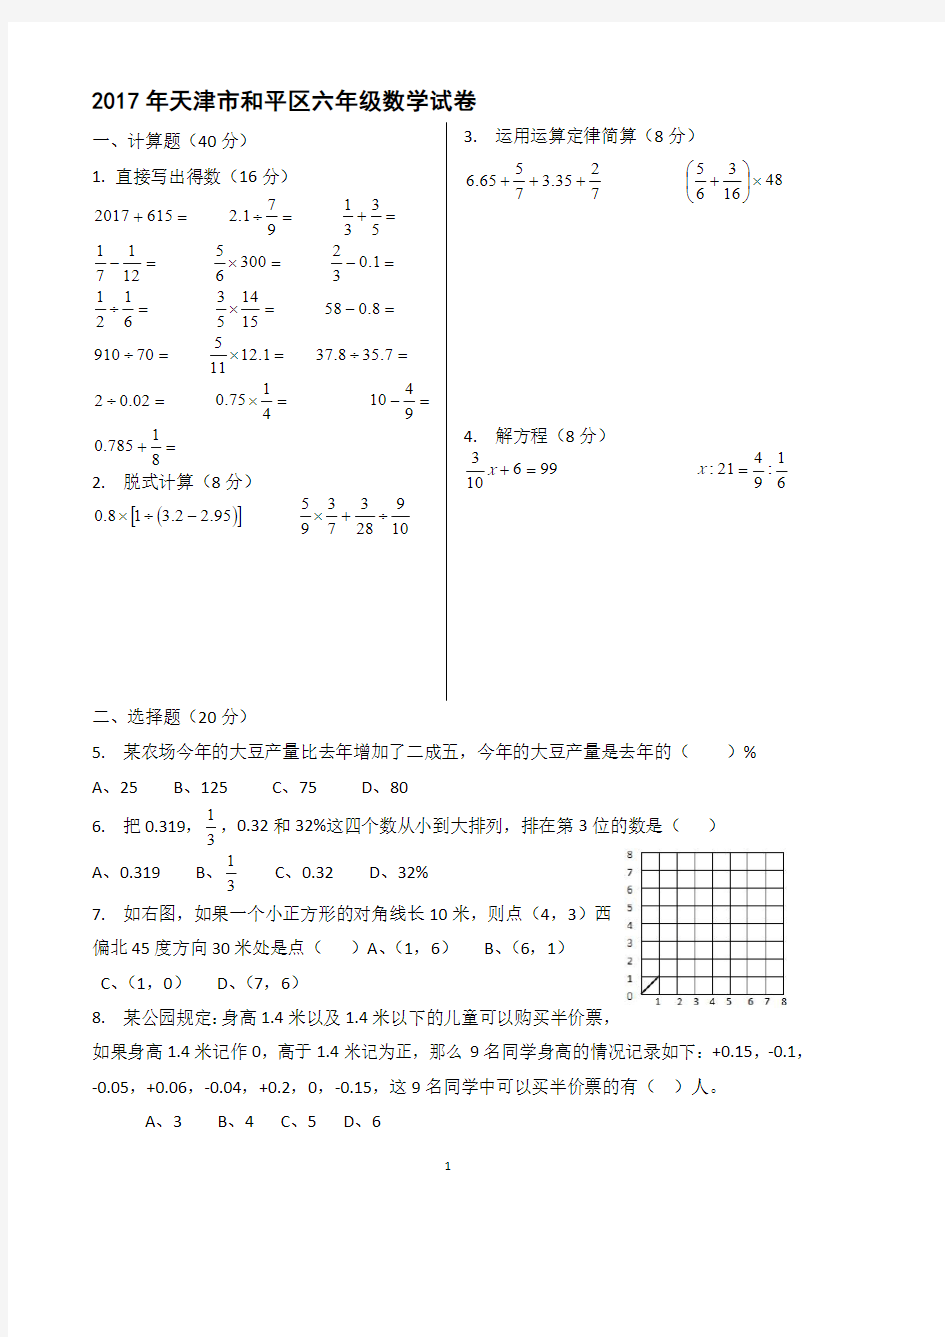 天津市和平区六年级升初中数学试卷